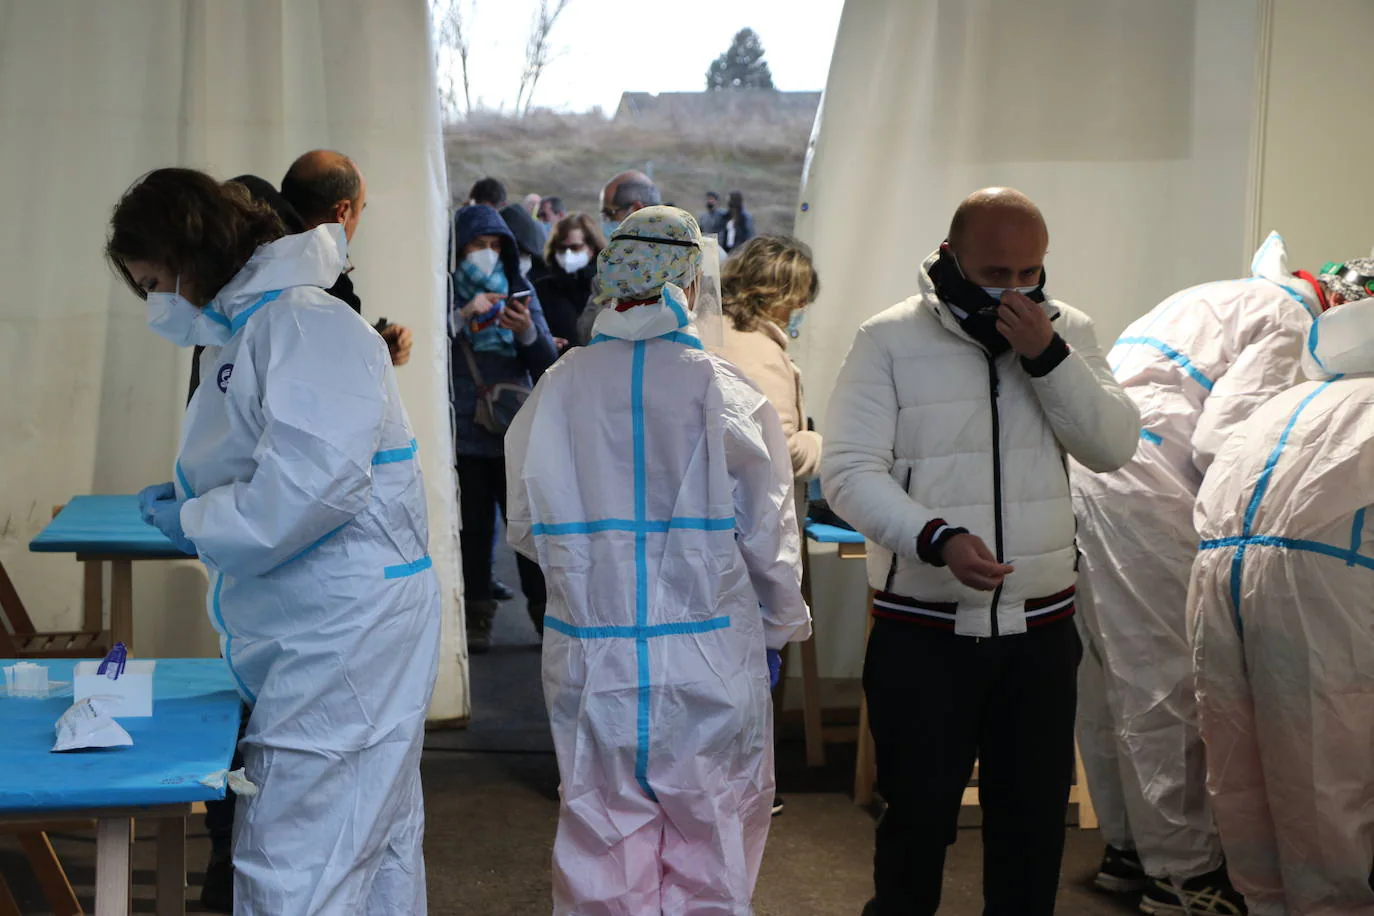 Los cribados masivos de test de antígenos regresan a varios puntos de la provincia de León a partir del lunes, 17 de enero.